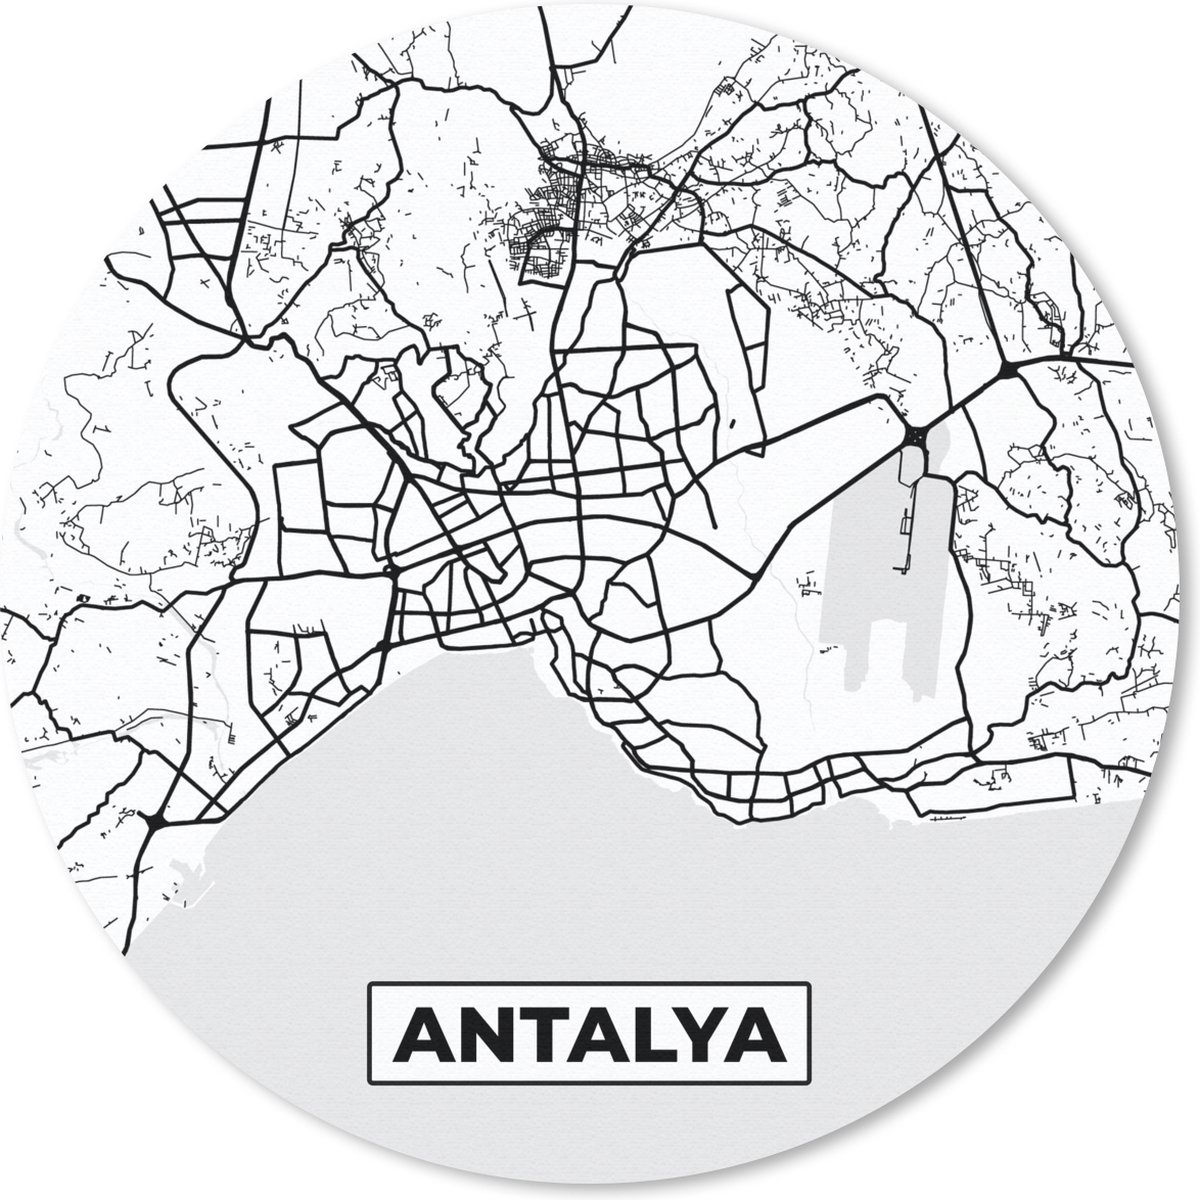 Muismat - Mousepad - Rond - Antalya - Stadskaart - Plattegrond - Zwart Wit - Kaart - 50x50 cm - Ronde muismat